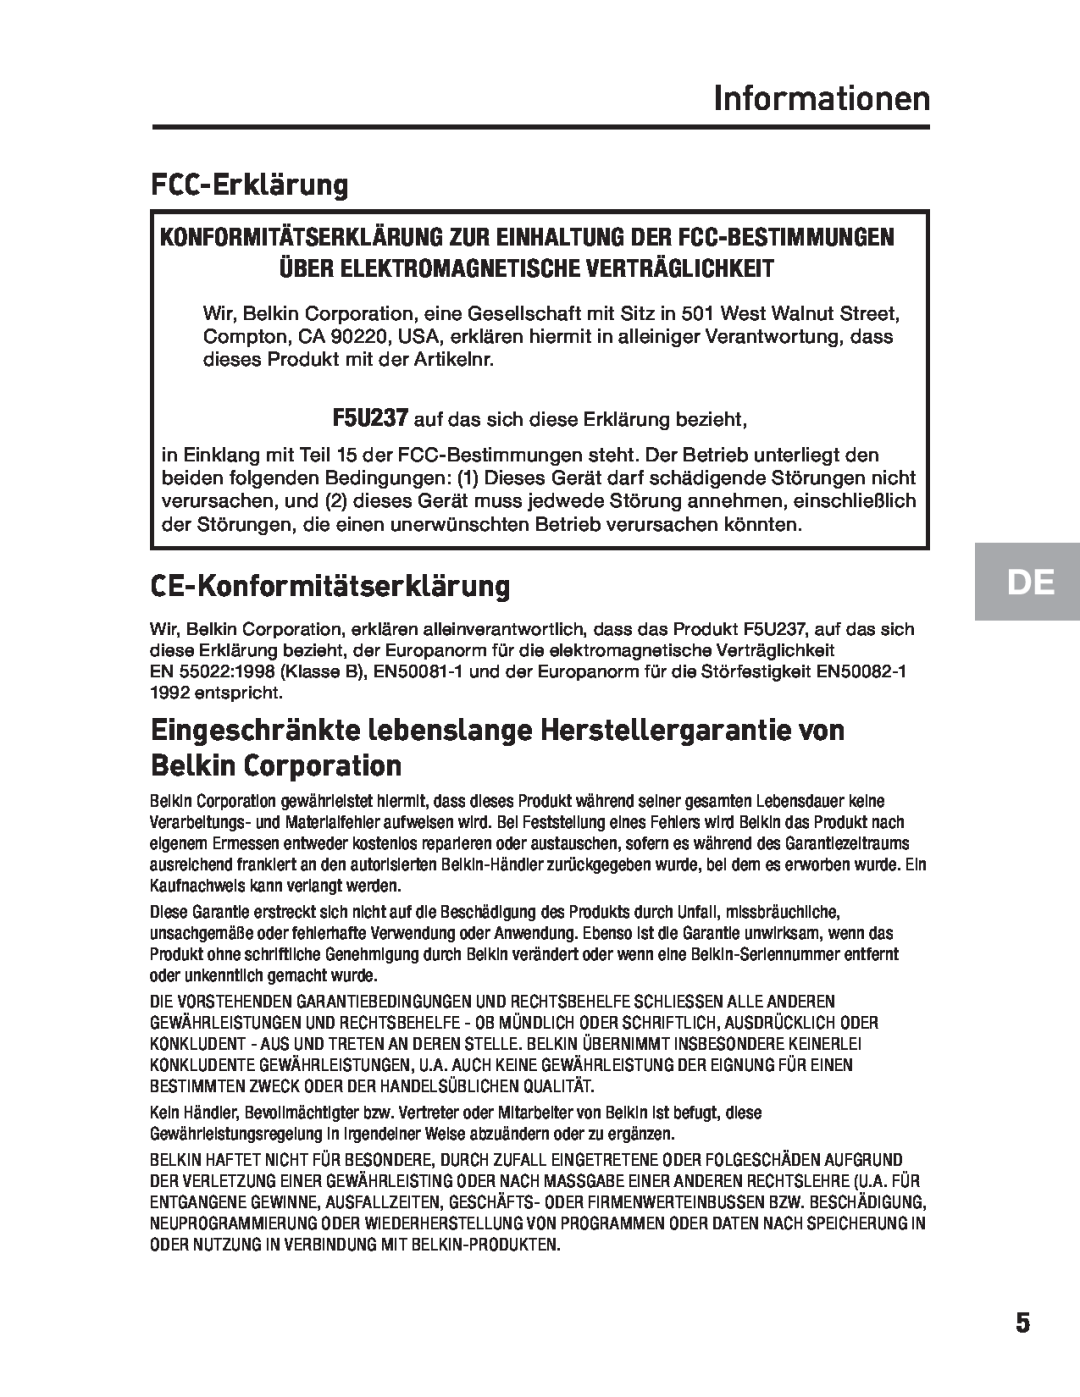 Belkin F5U237 user manual Informationen, FCC-Erklärung, CE-Konformitätserklärung 